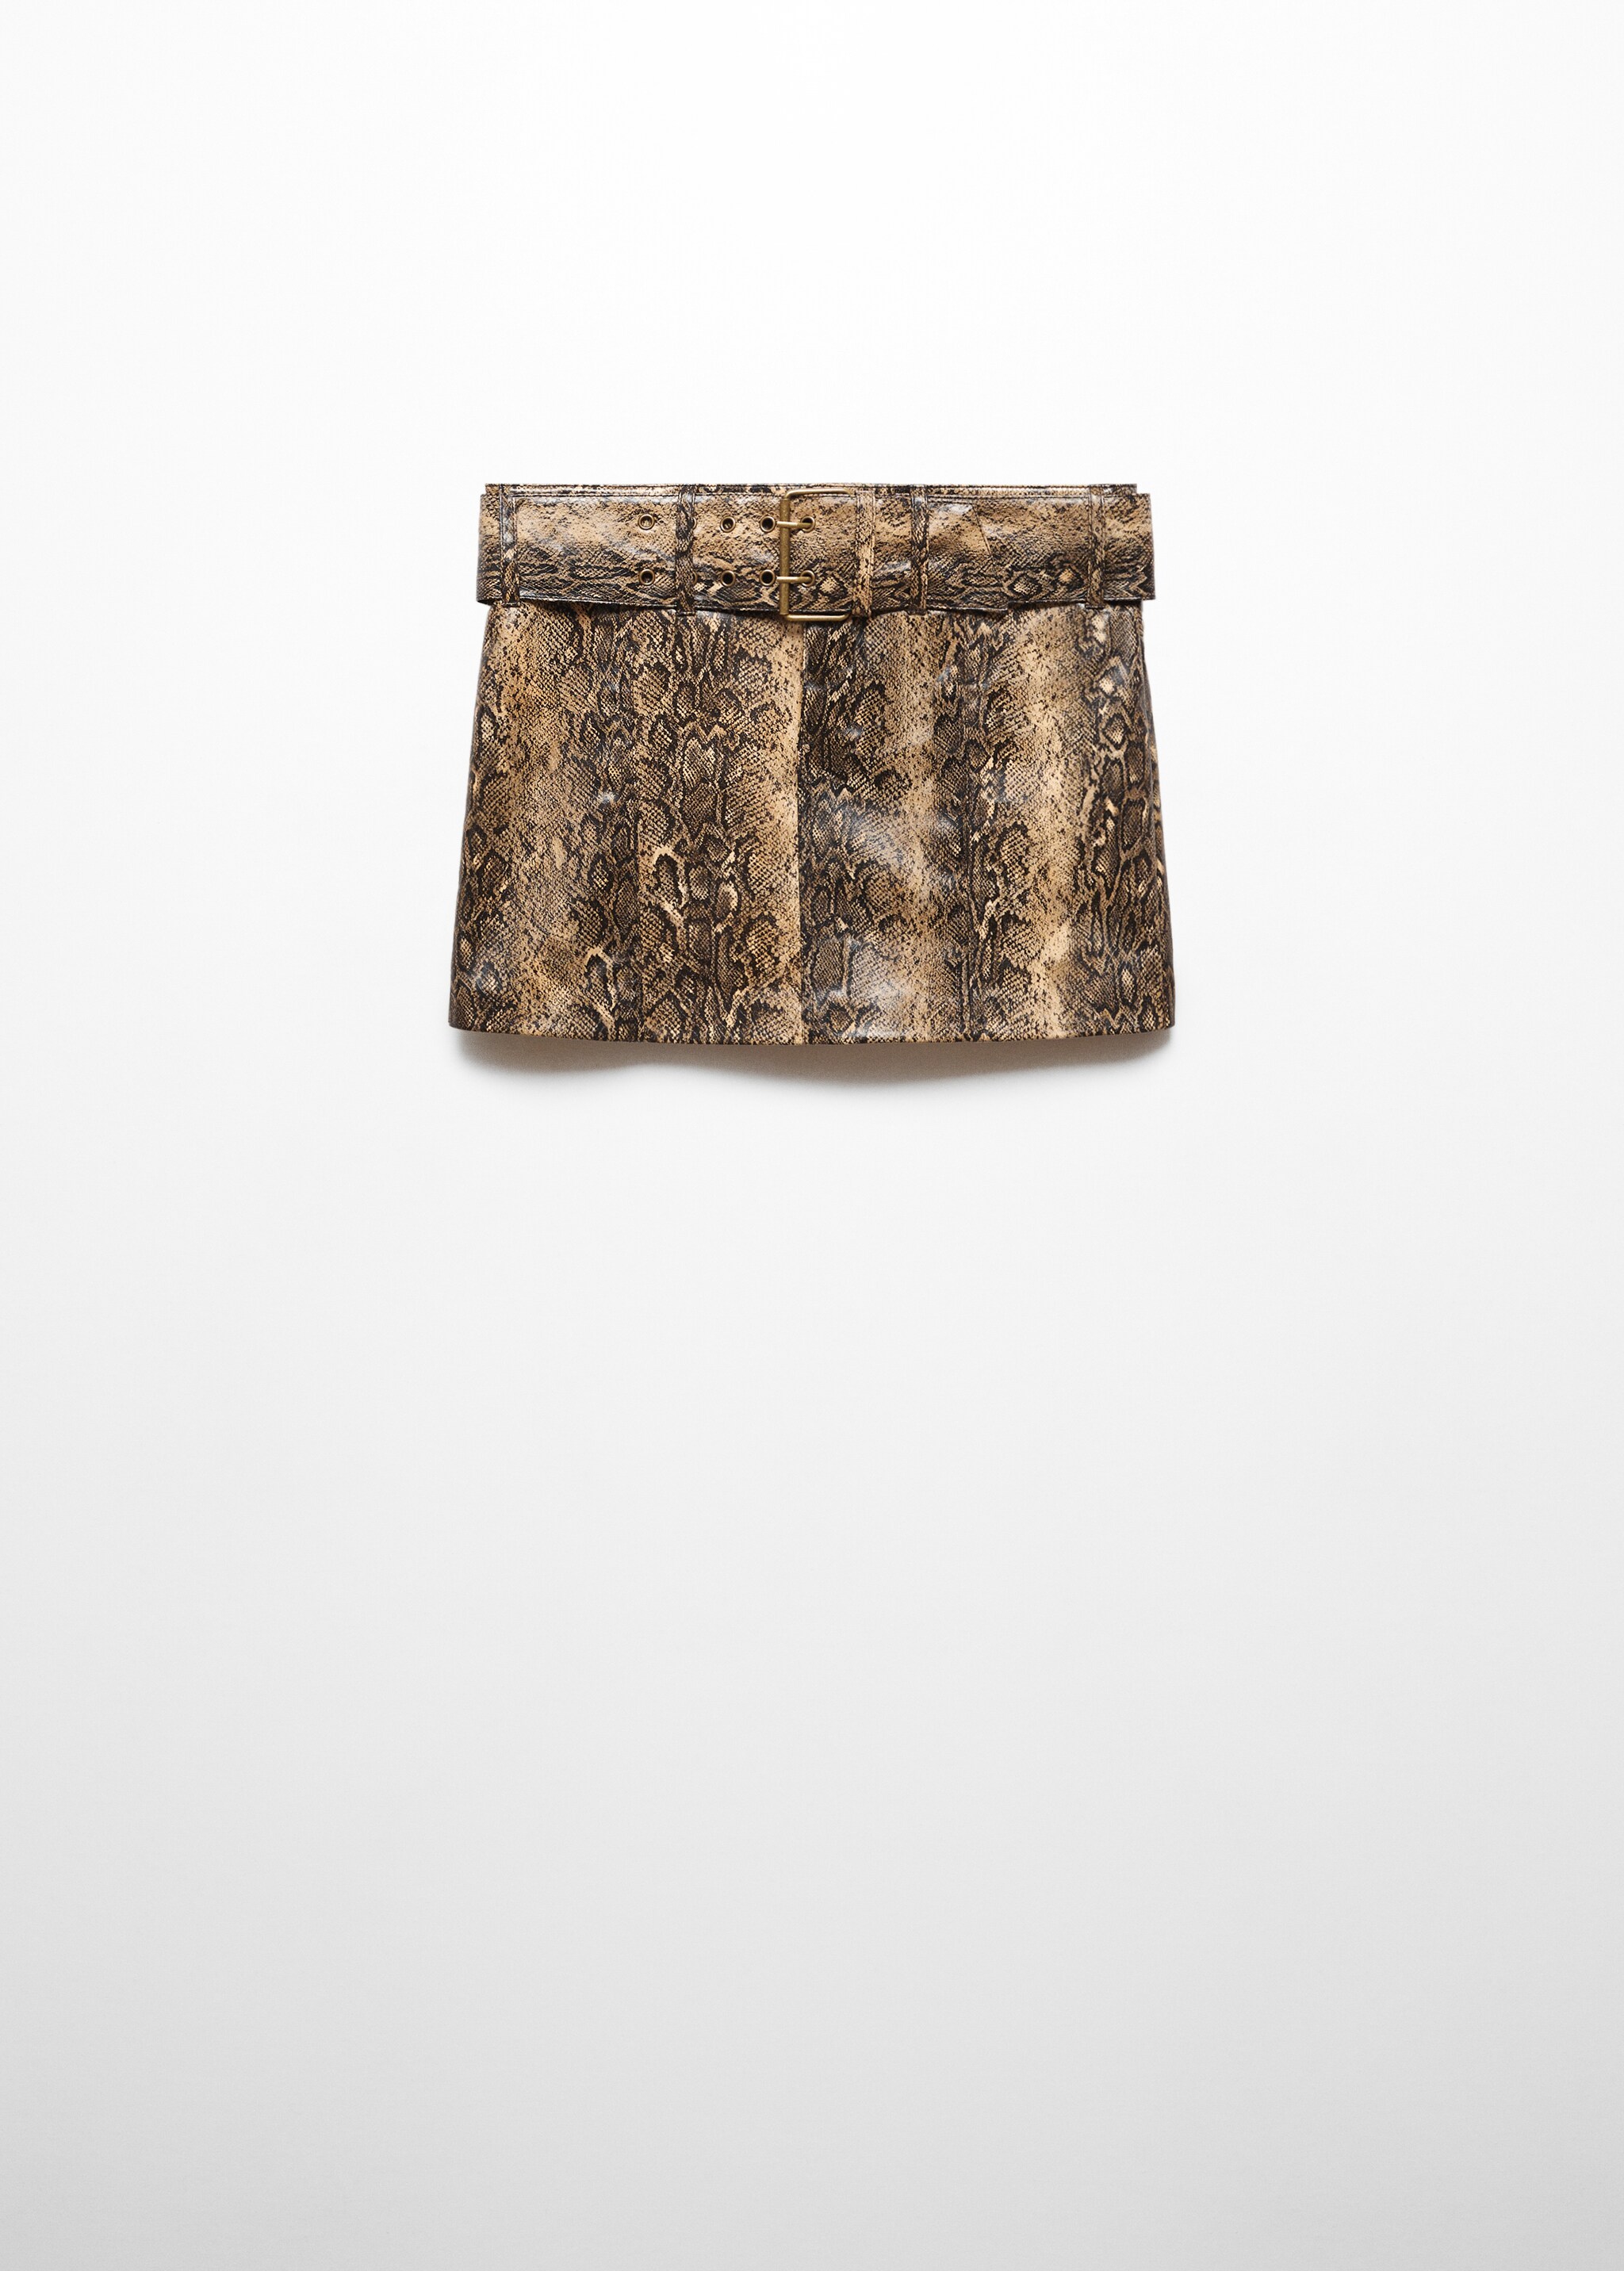 Minifalda cinturón animal print - Artículo sin modelo